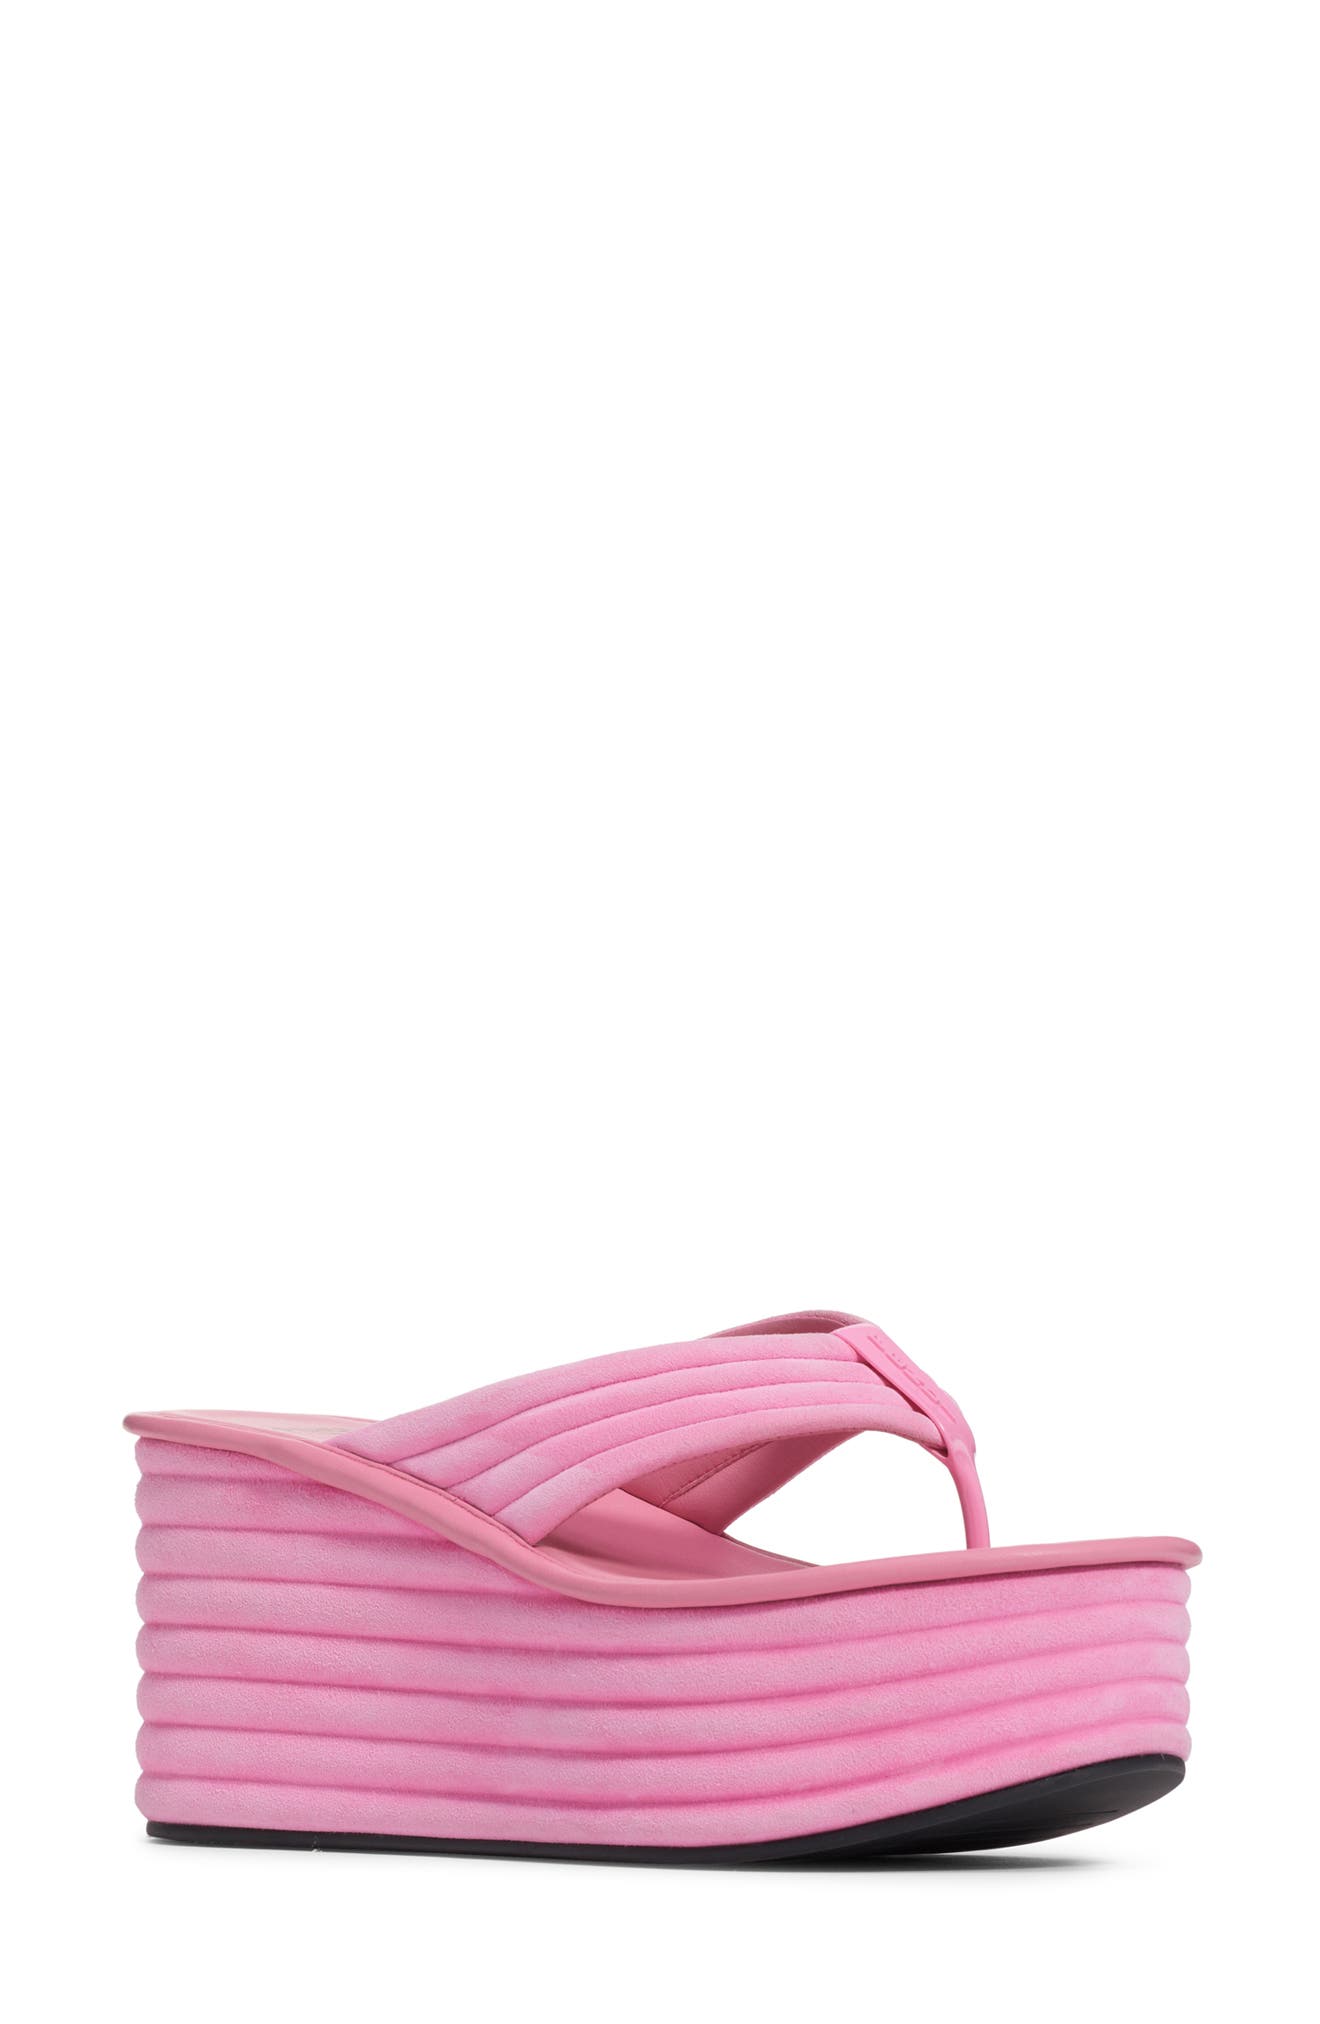 pink platform flip flops